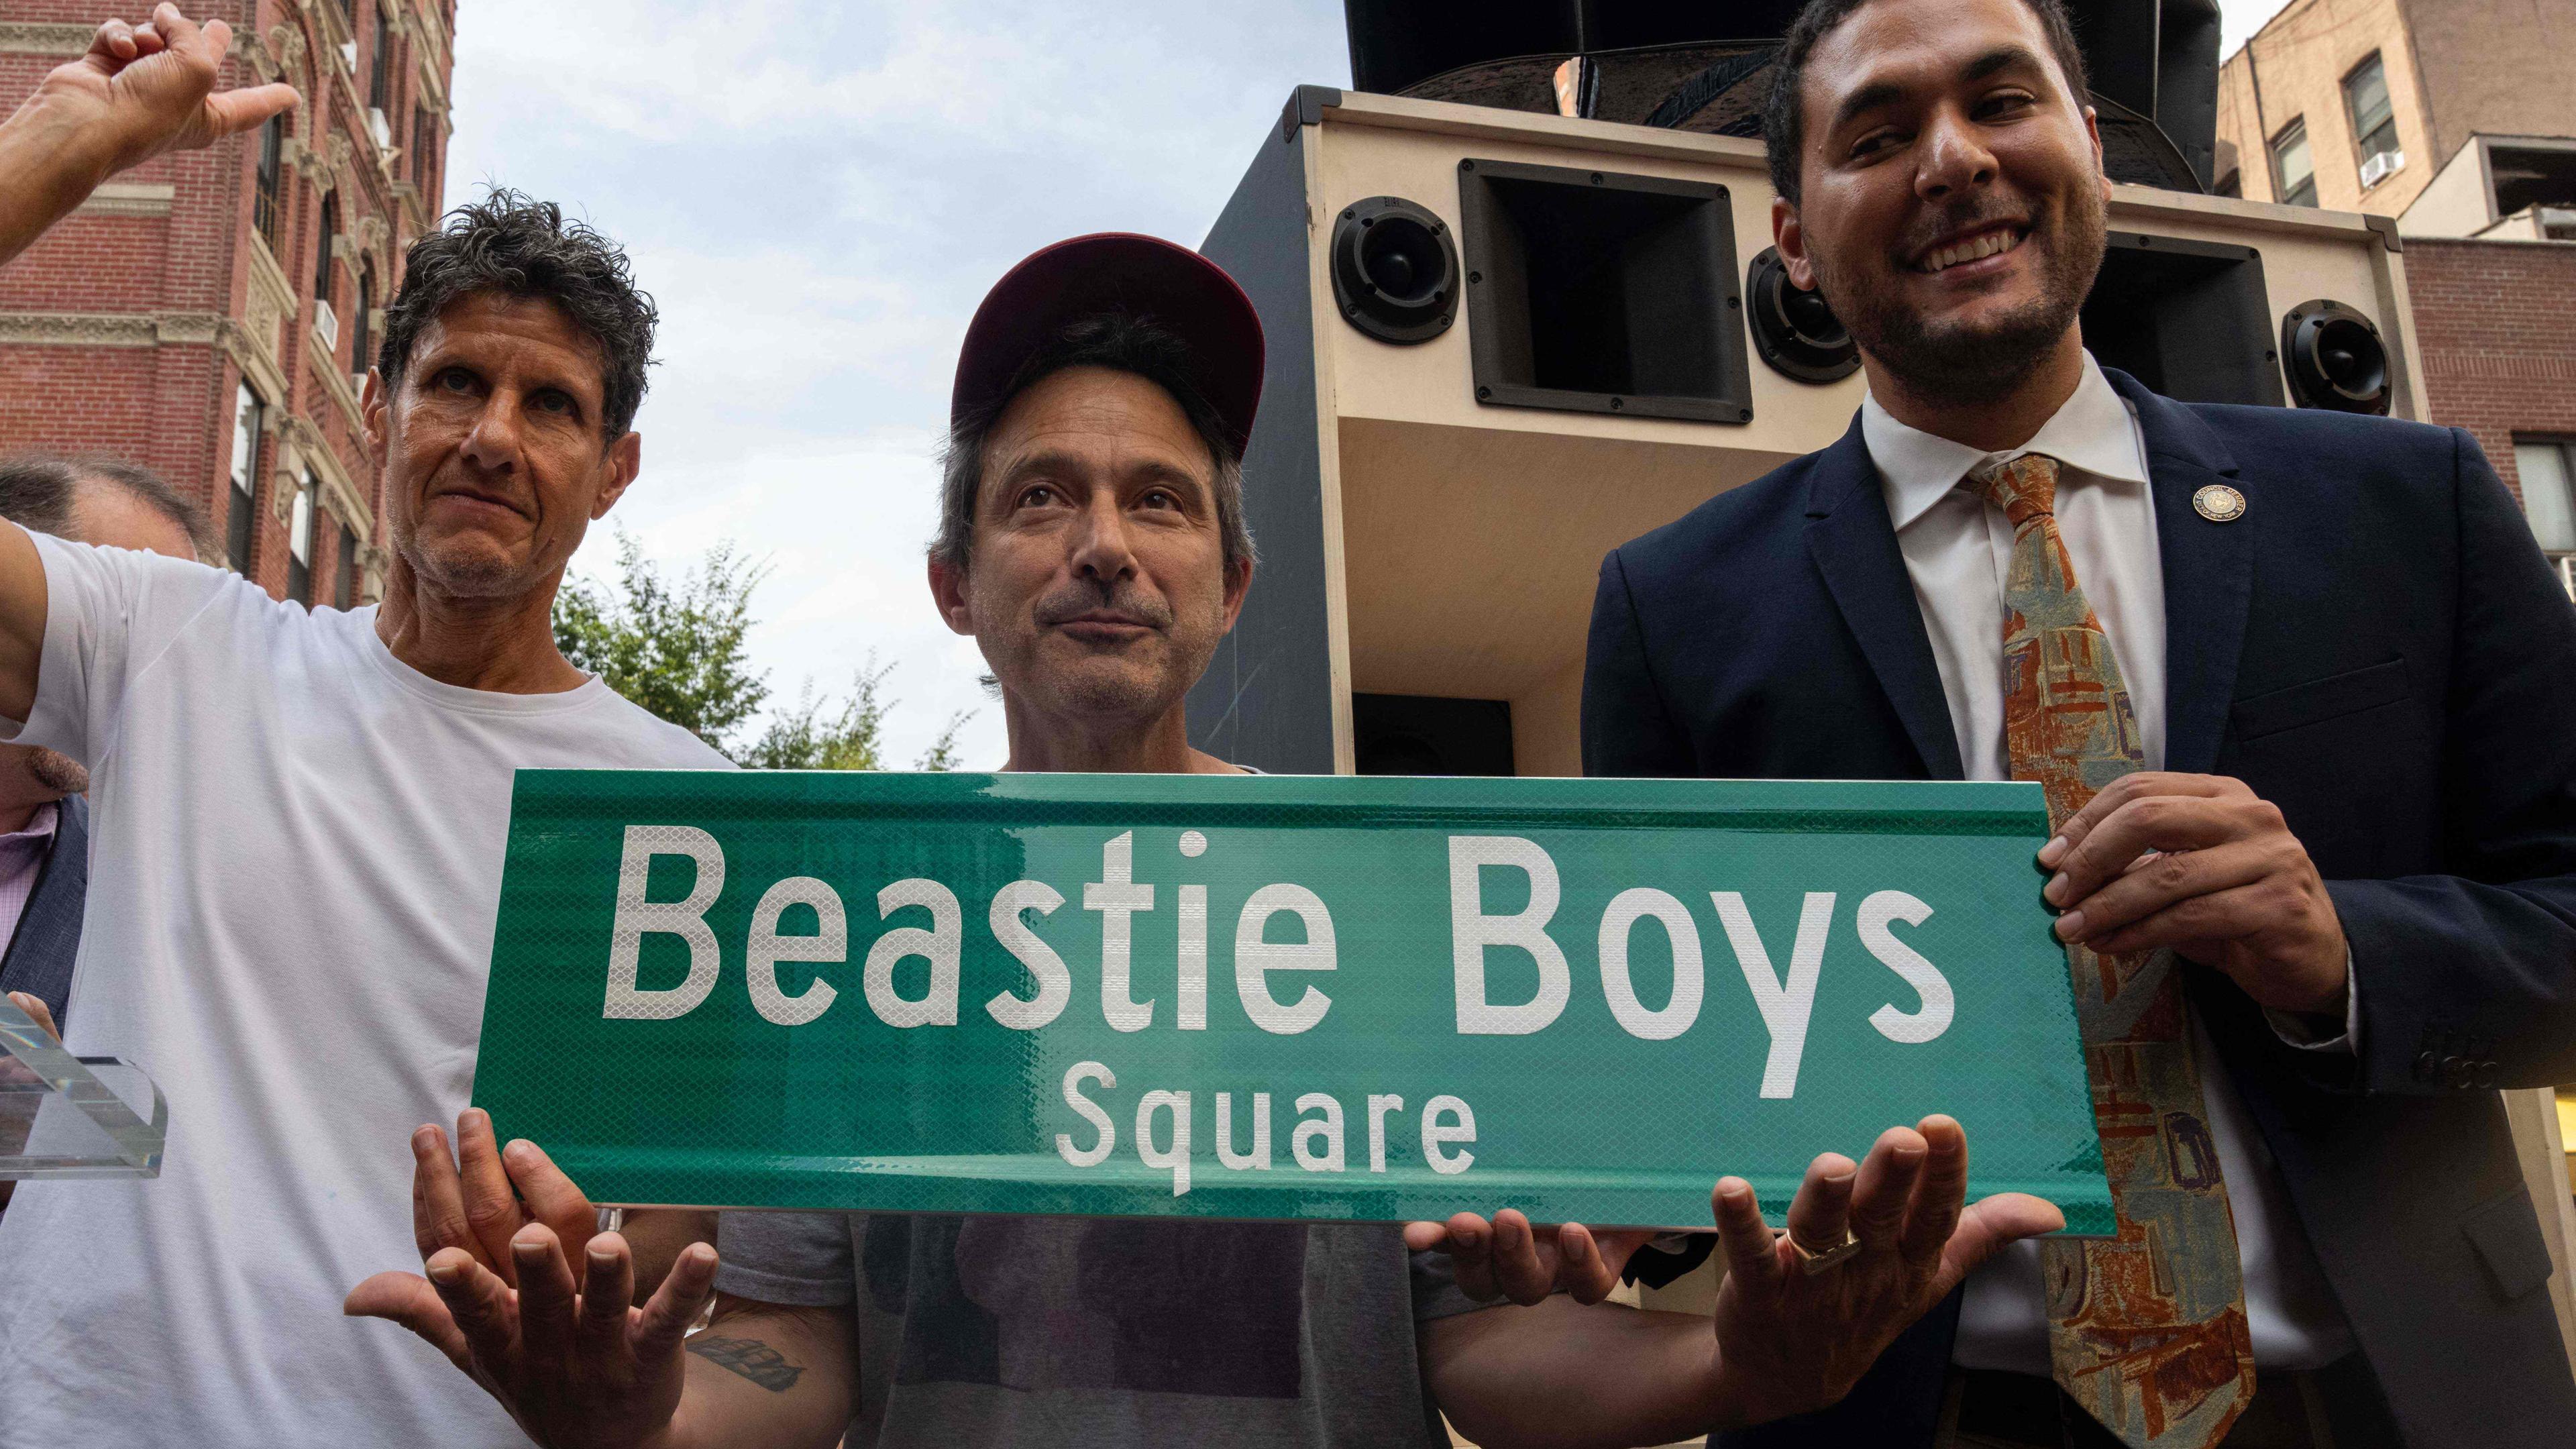 Adam Horowitz und Michael Diamond von der Hip-Hop-Band Beastie Boys enthüllen zusammen mit dem New Yorker Stadtrat Christopher Marte den "Beastie Boys Square" in Manhattan.